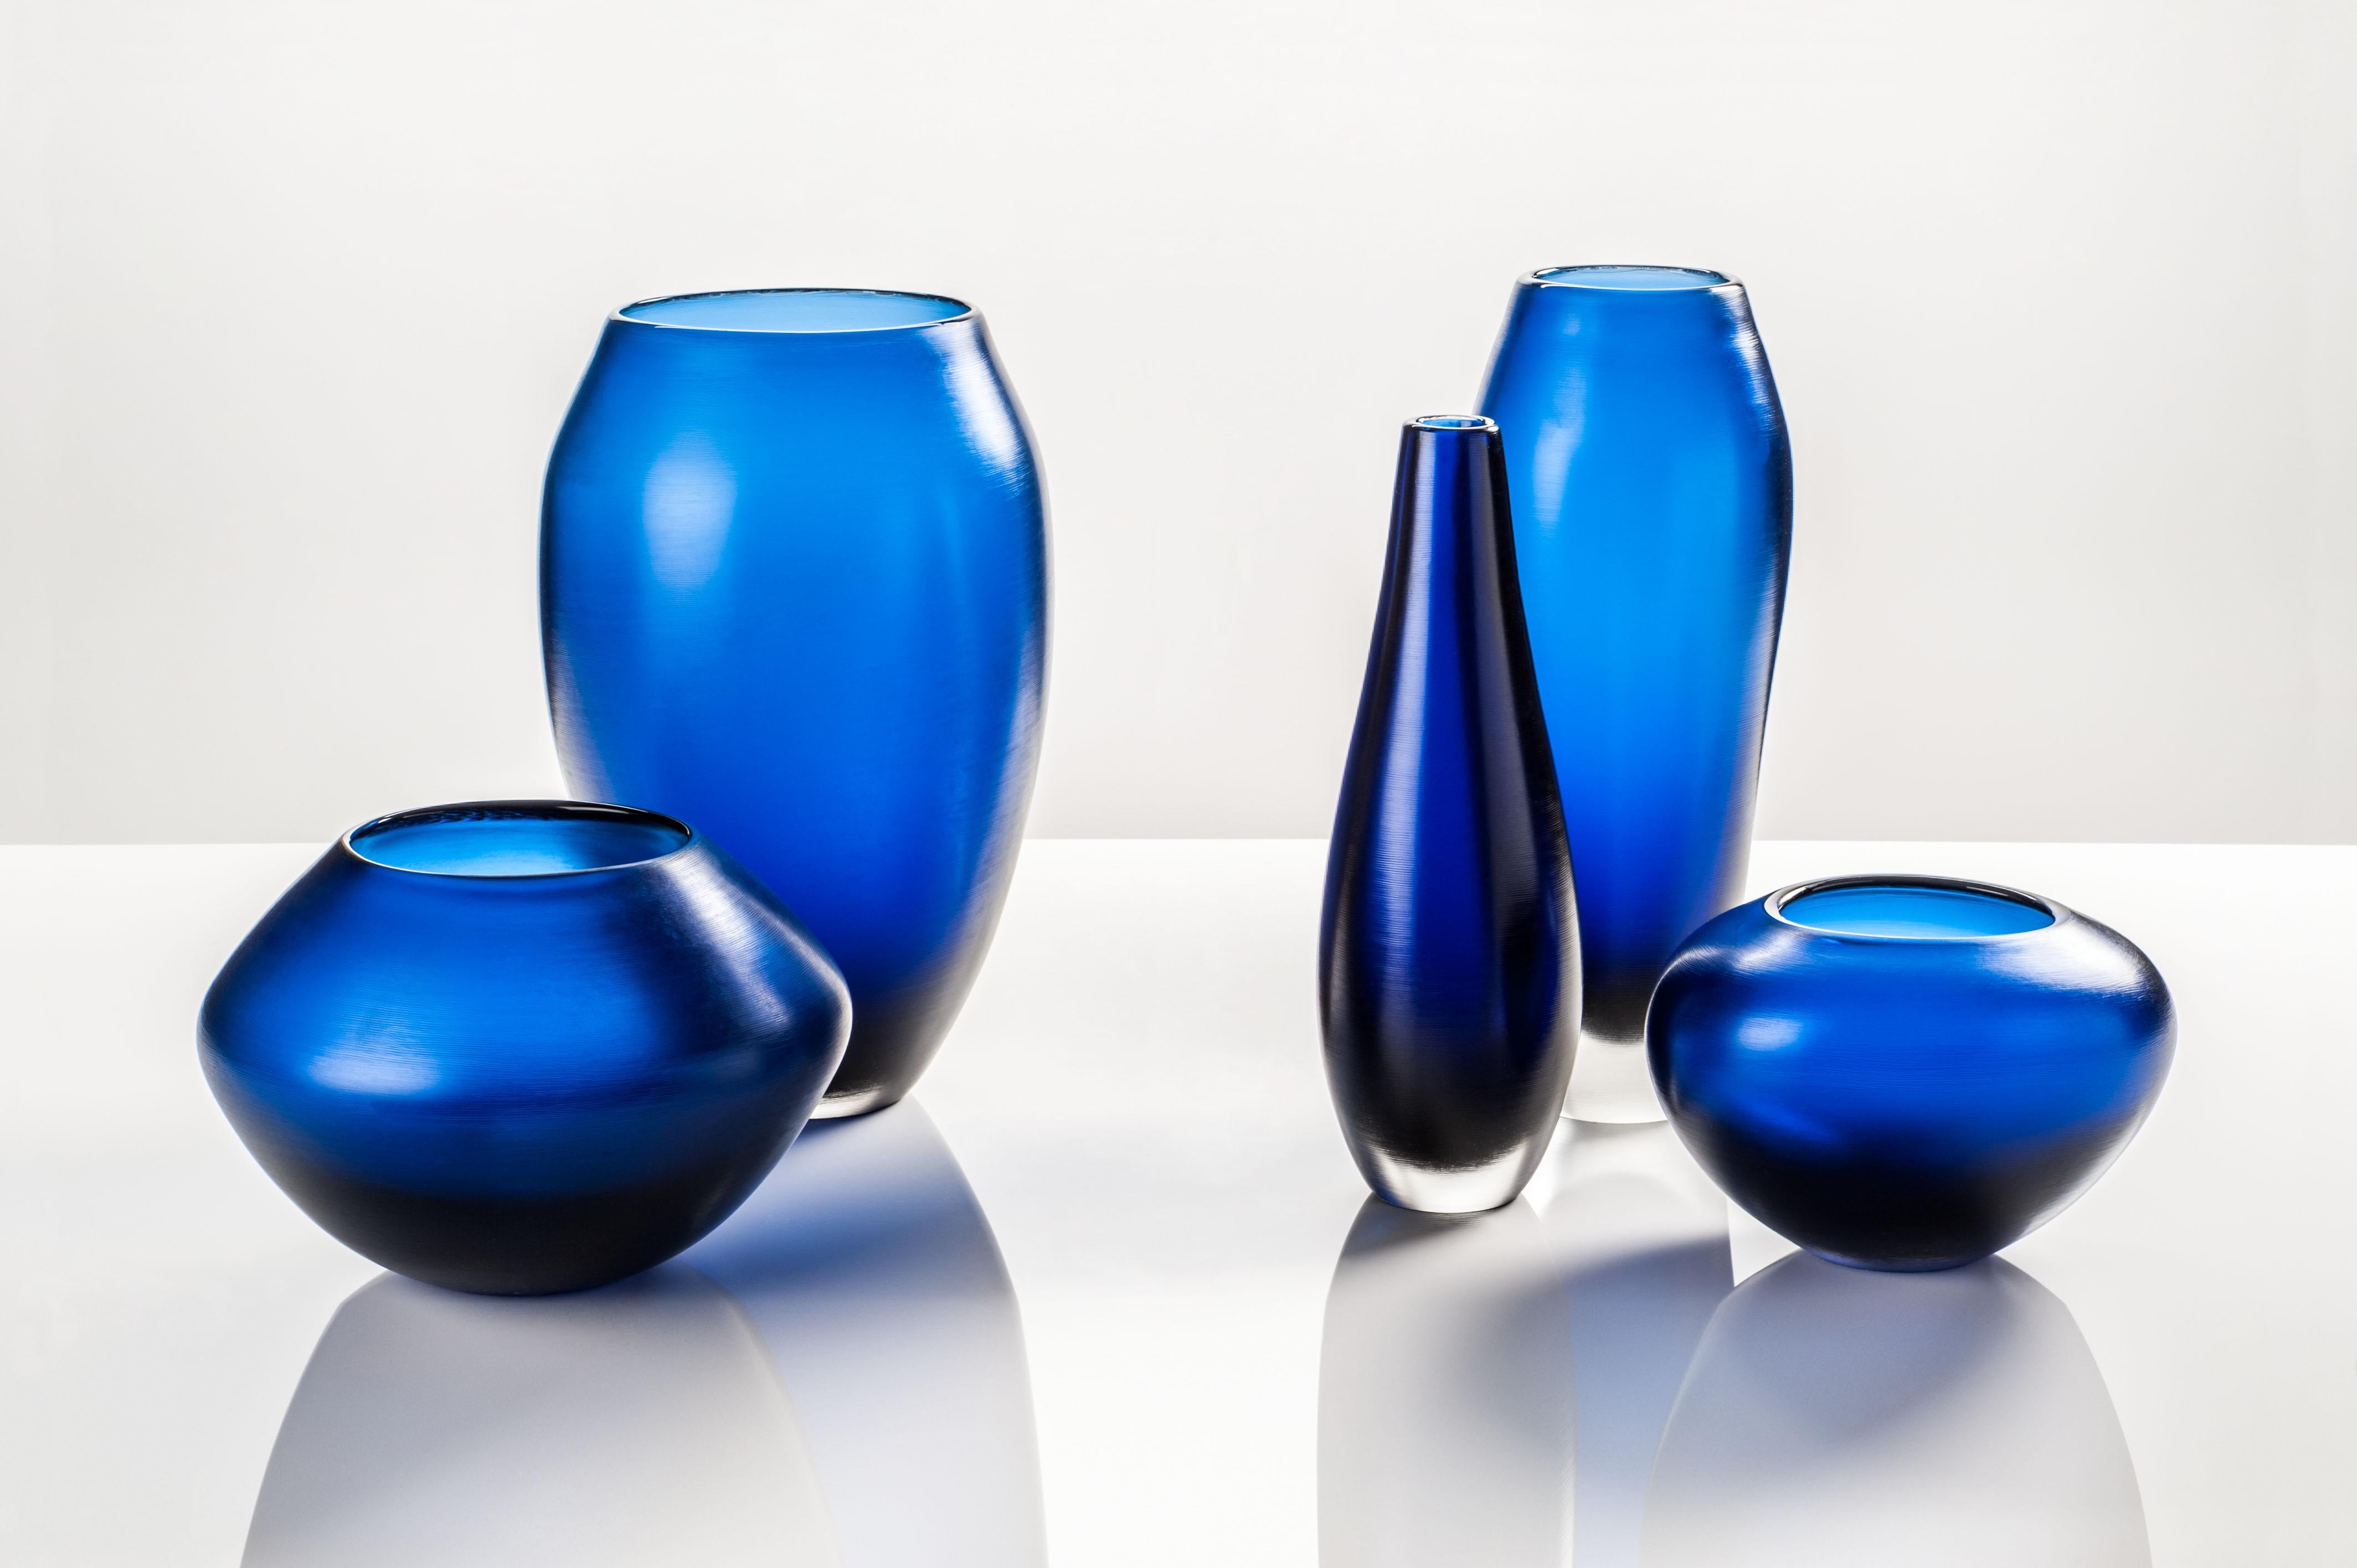 Die von Paolo Venini entworfene und von Venini hergestellte Glasvasen-Kollektion Incisi hat eine gravierte Oberfläche. Der Entwurf stammt aus dem Jahr 1956. Nummerierte Auflage pro Jahr, marineblaue Versionen sind in einer limitierten Auflage von 19